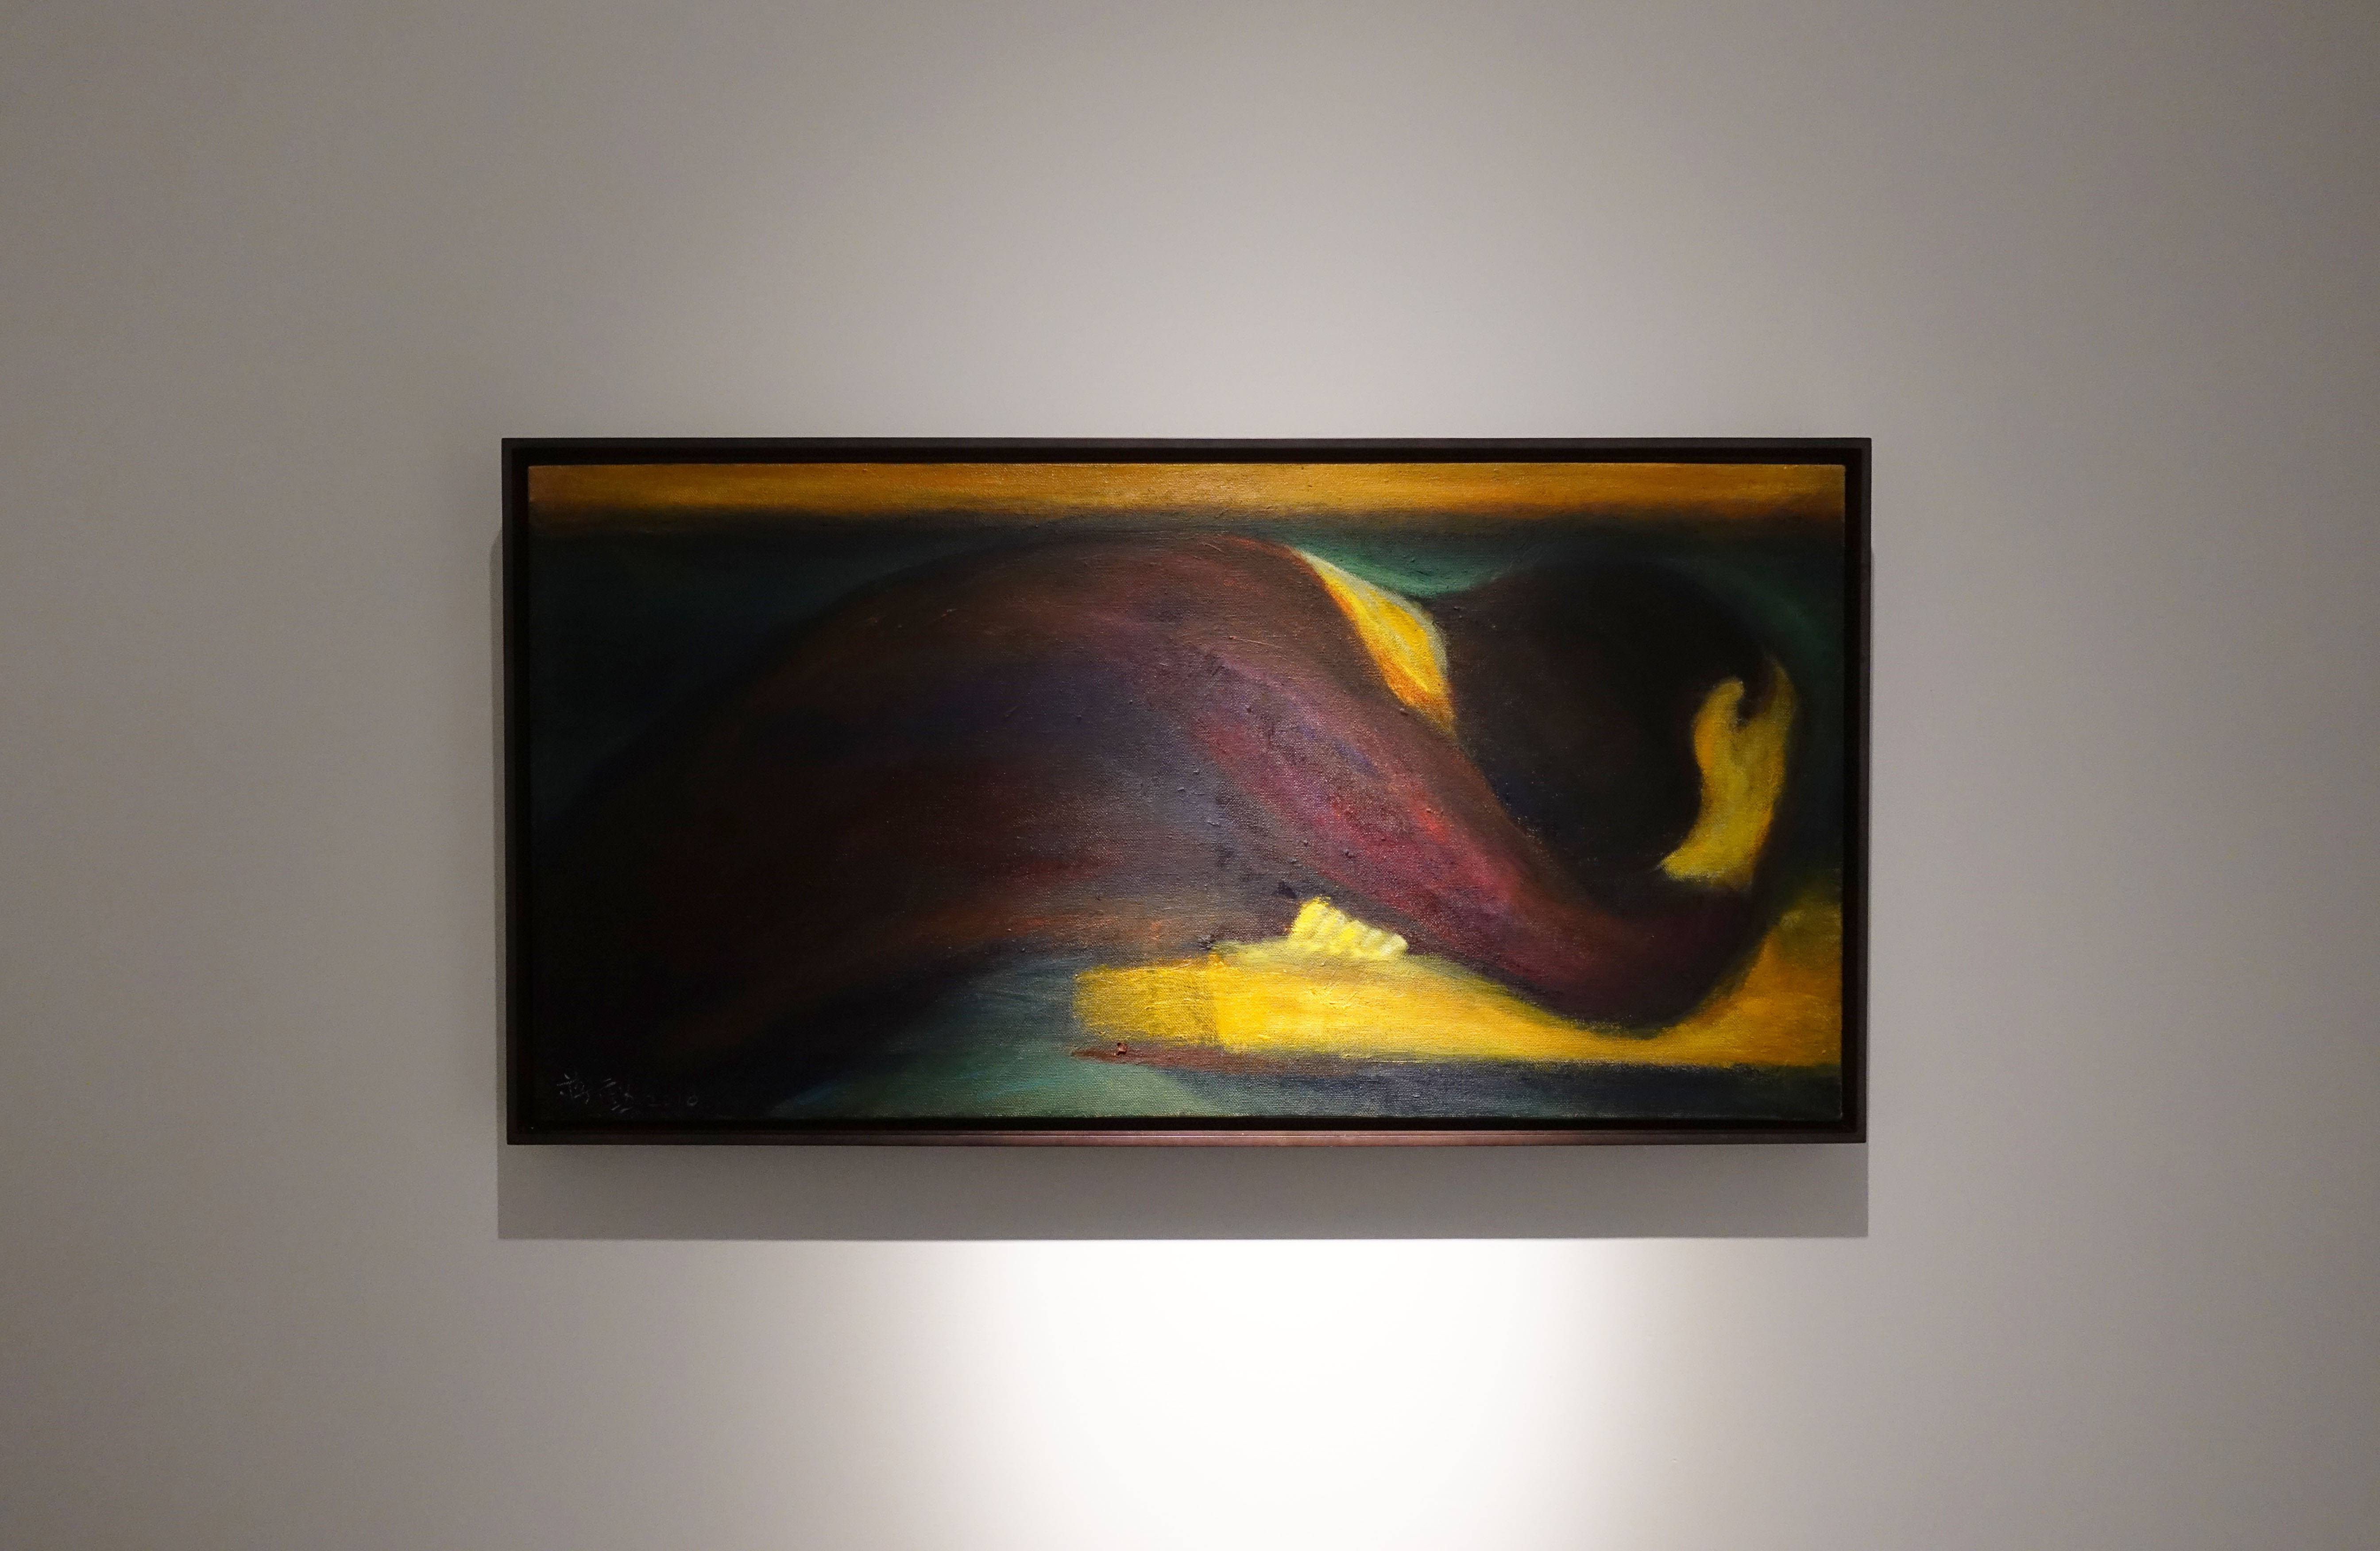 蔣勳，《小憩》，油彩畫布，50.5x100cm，2018。